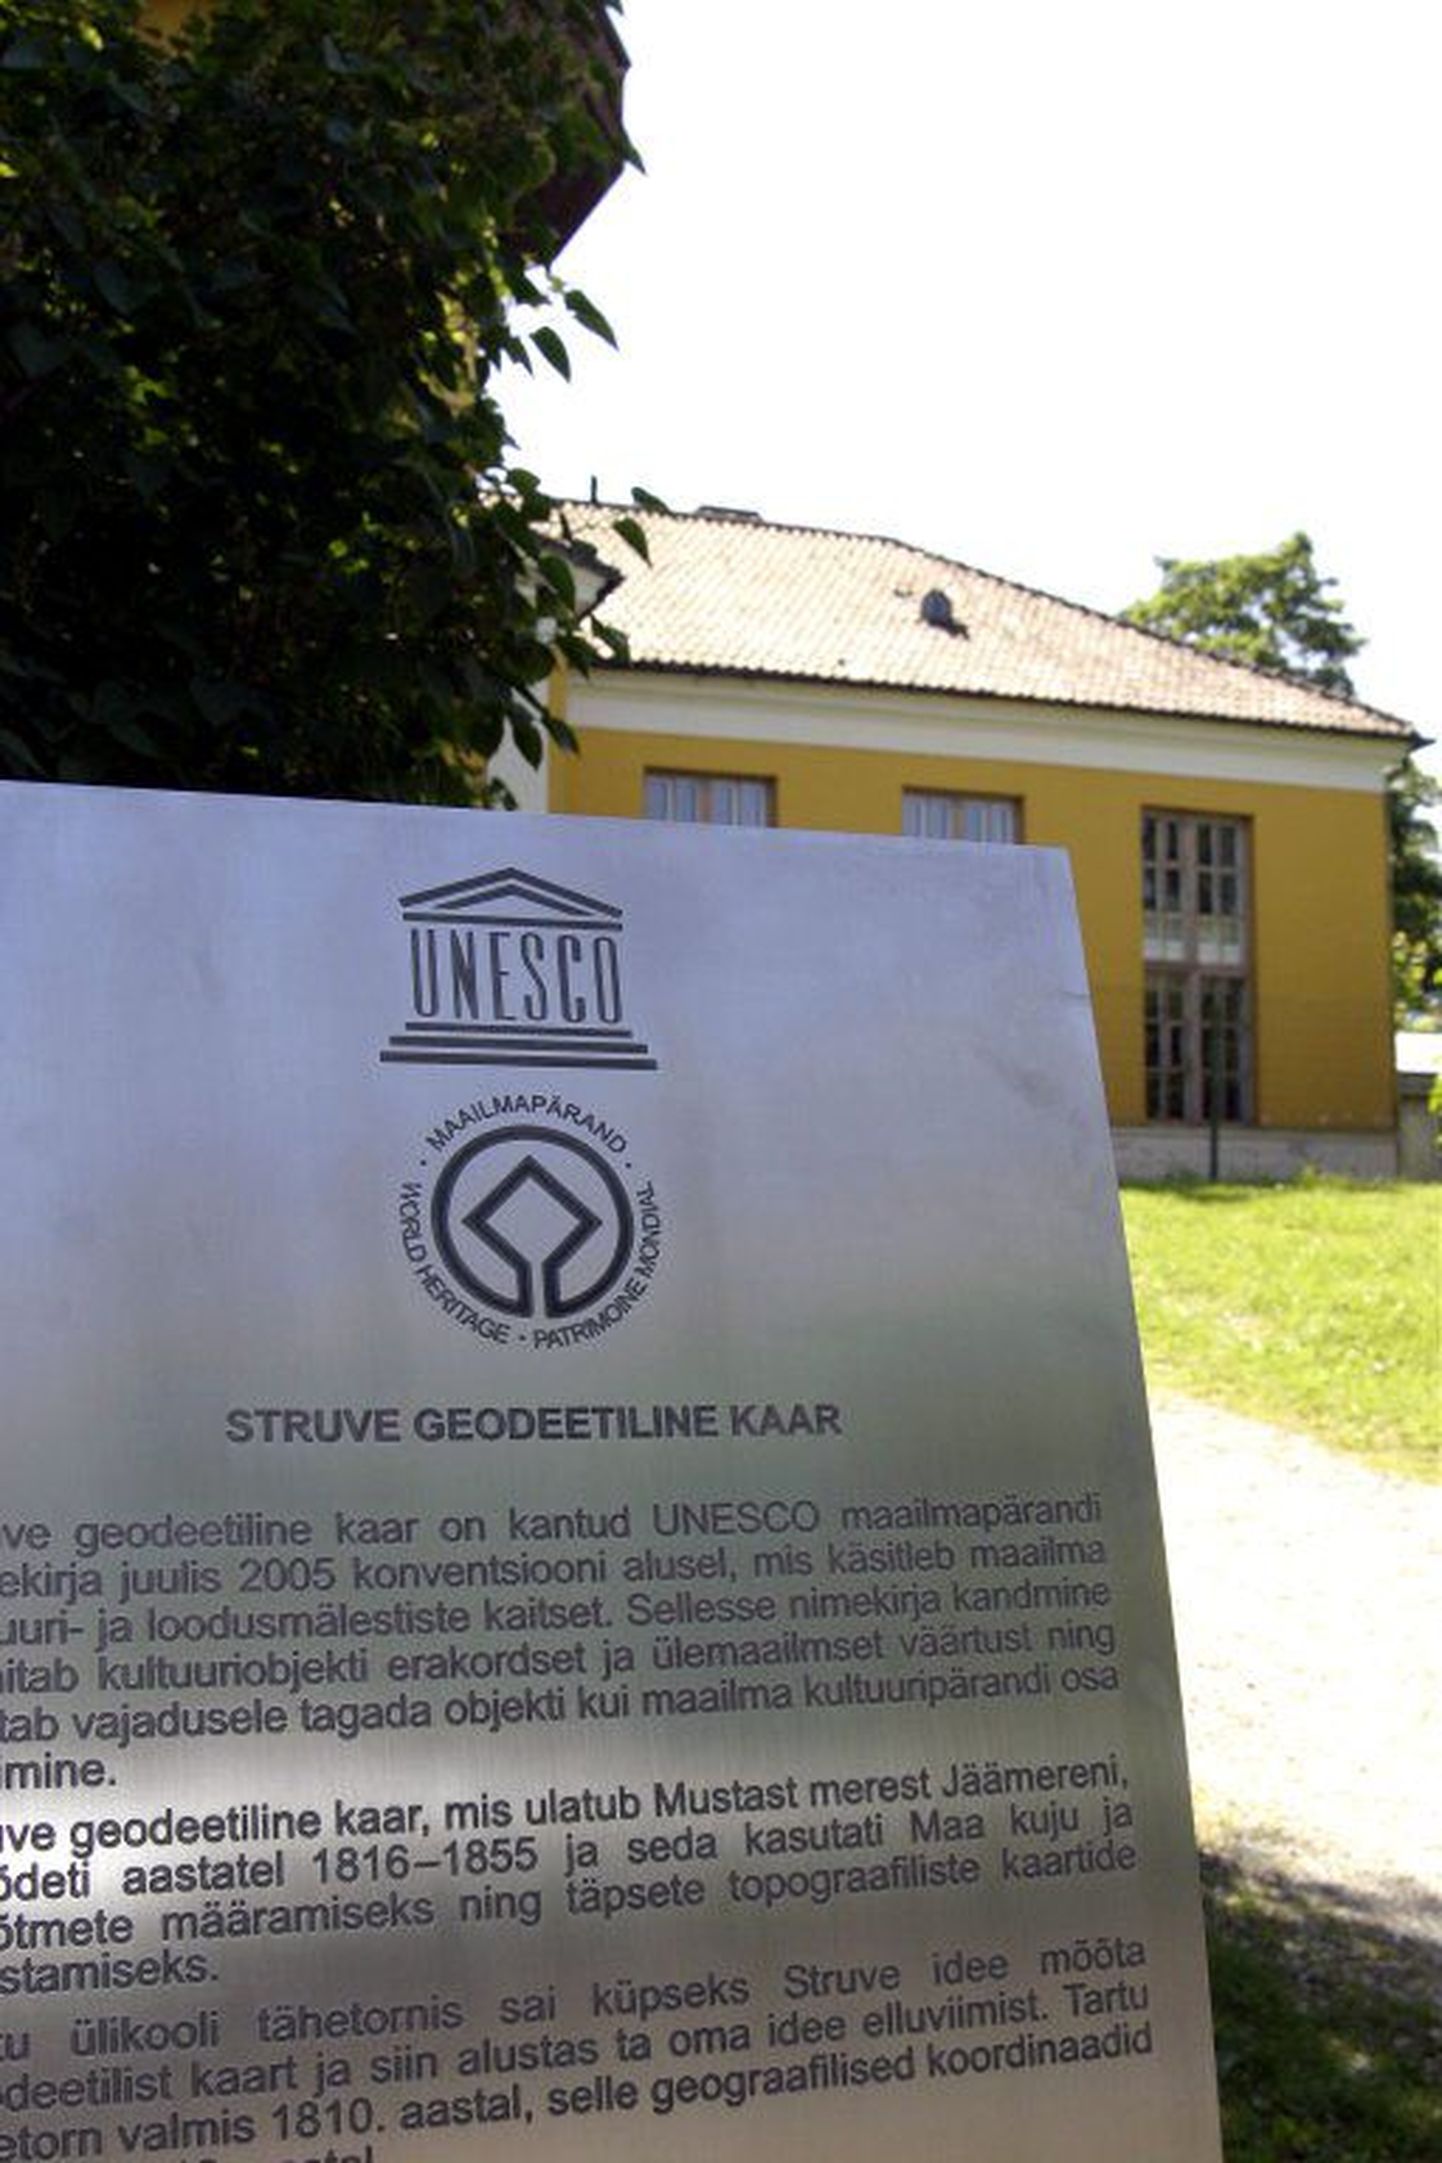 Käesoleva aasta 18. juunist Toomemäel Tartu tähetorni juures asuv tähis, mis kinnitab, et torn kuulub osana Struve geodeetilisest kaarest UNESCO maailmapärandisse.